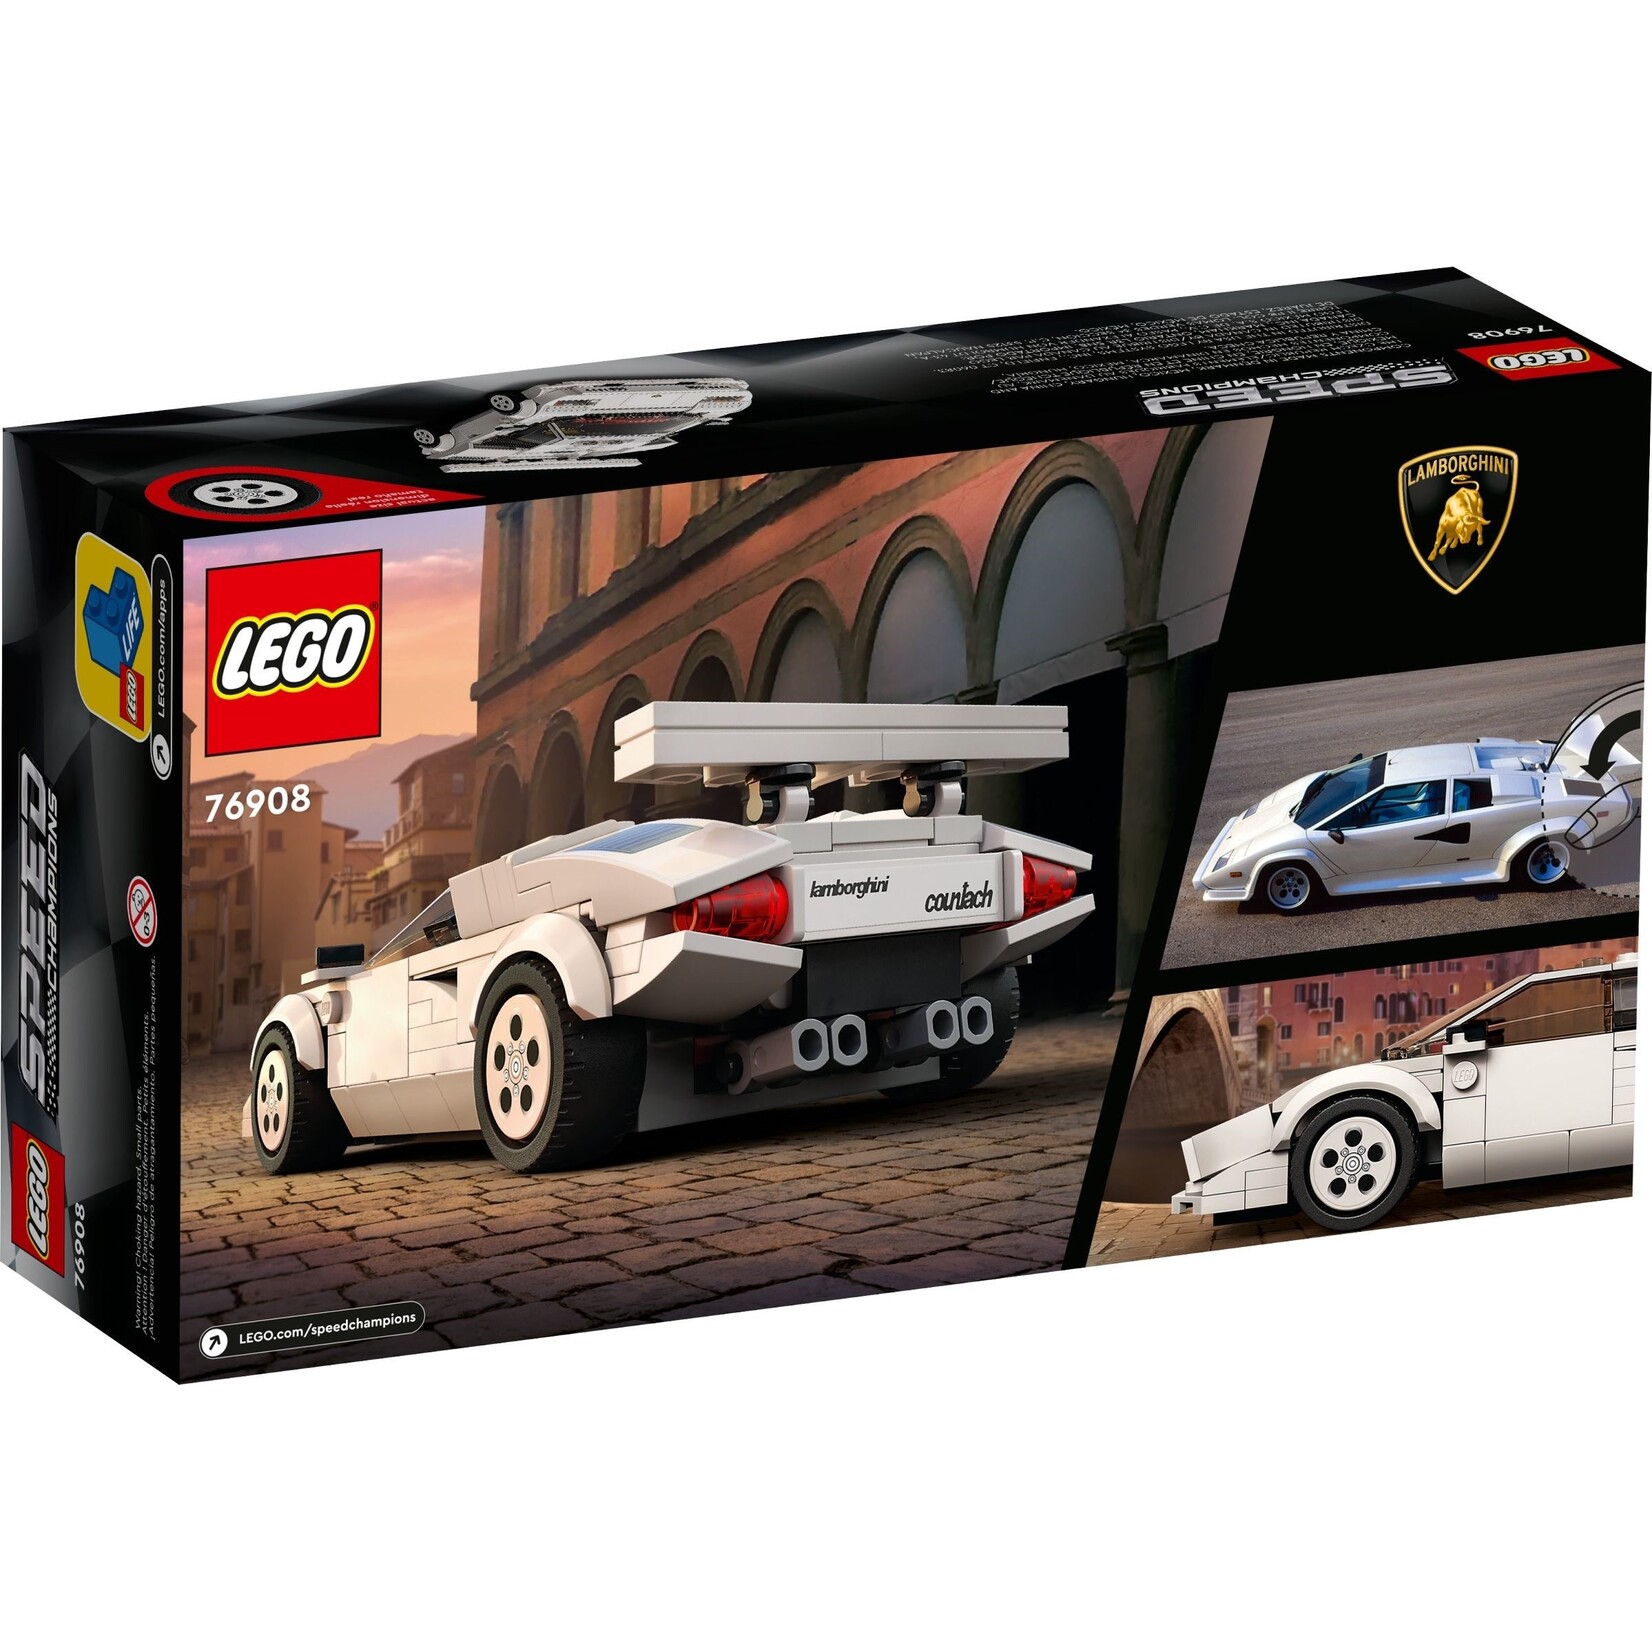 LEGO Lamborghini Countach - 76908